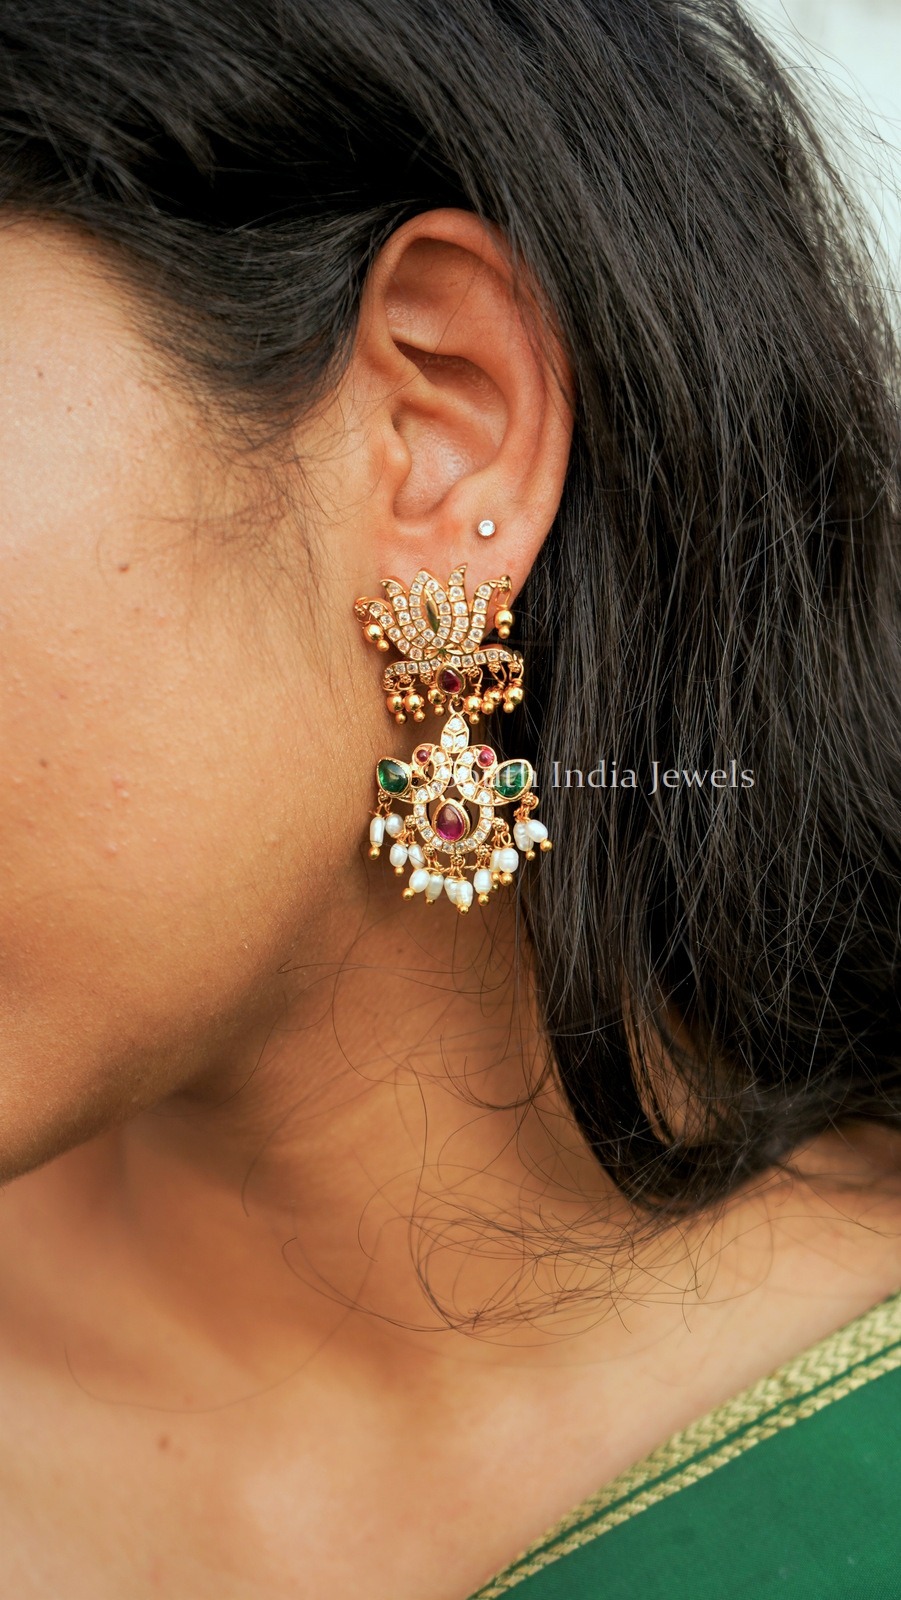 Flipkartcom  Buy TANLOOMS Attractive Half Lotus Meena Earrings For Girls   Women Alloy Stud Earring Online at Best Prices in India